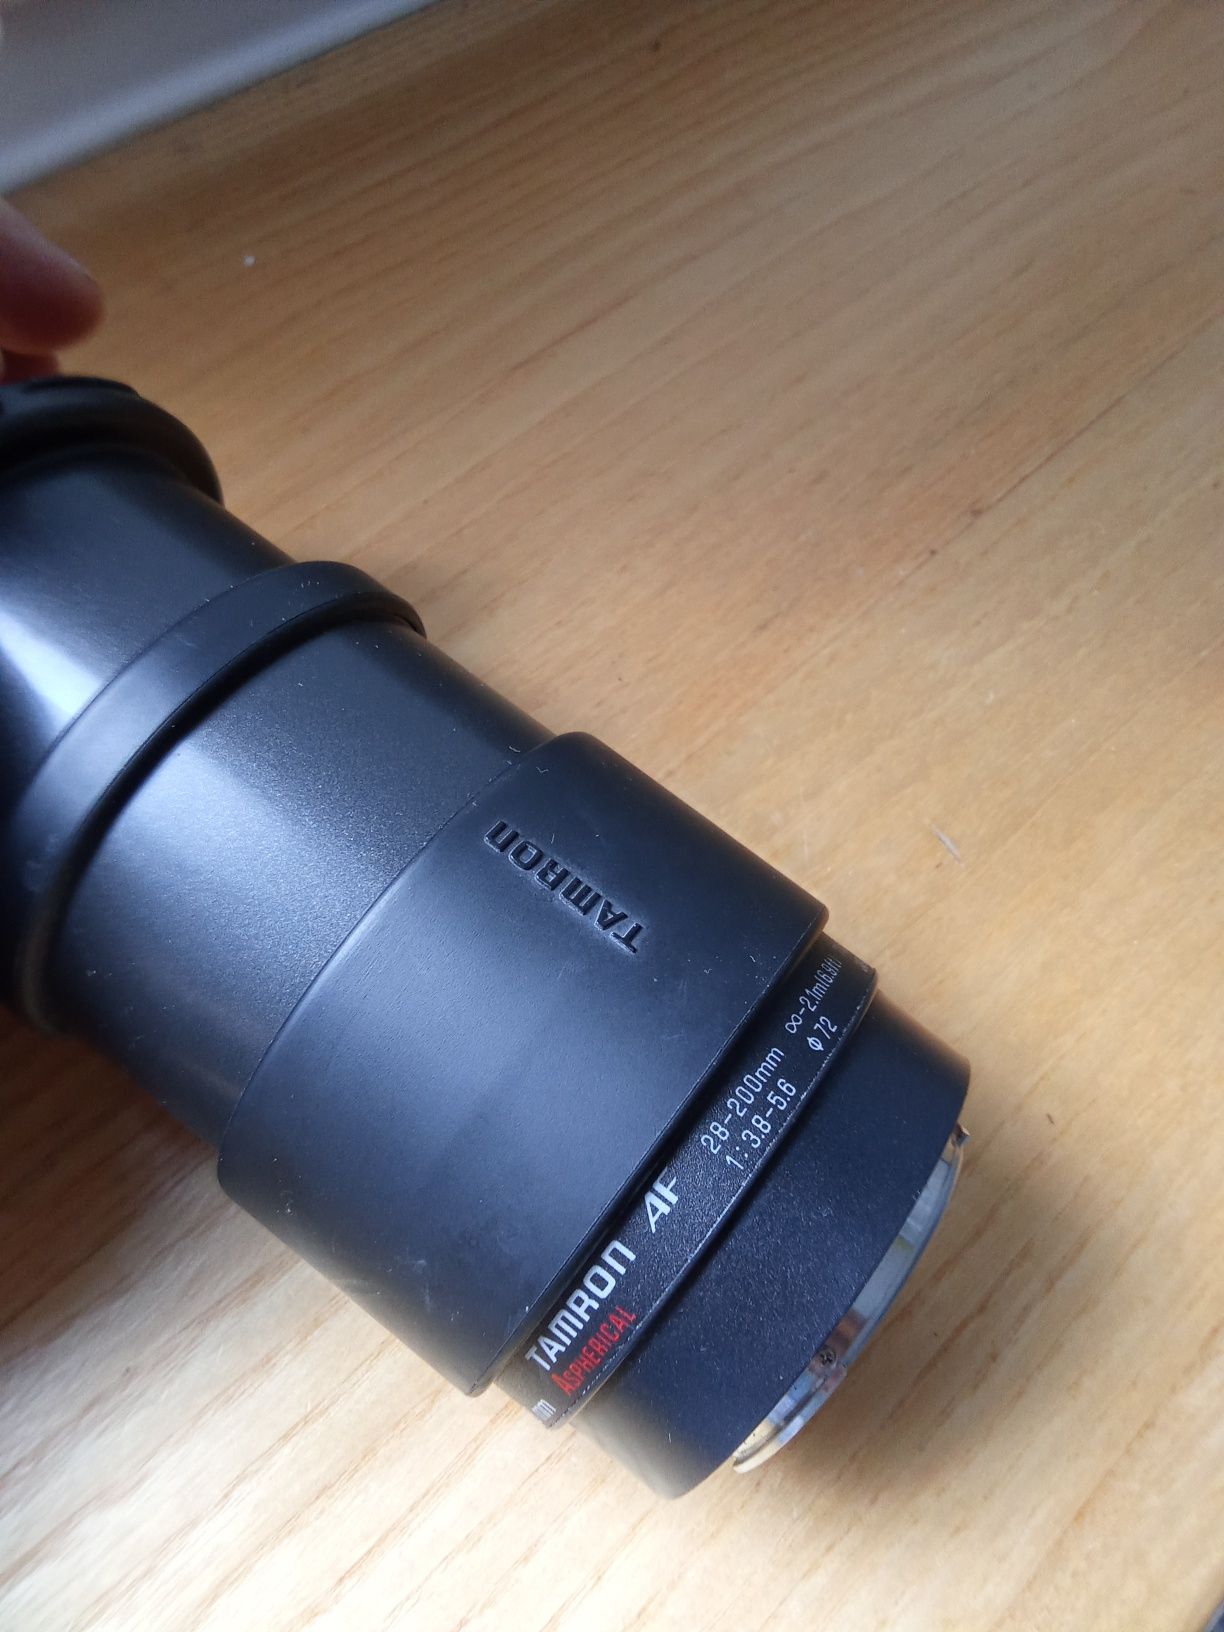 Obiektyw Tamron AF Aspherical 28-200mm 1:3.8-5.6  for Sony/Minolta
Obi